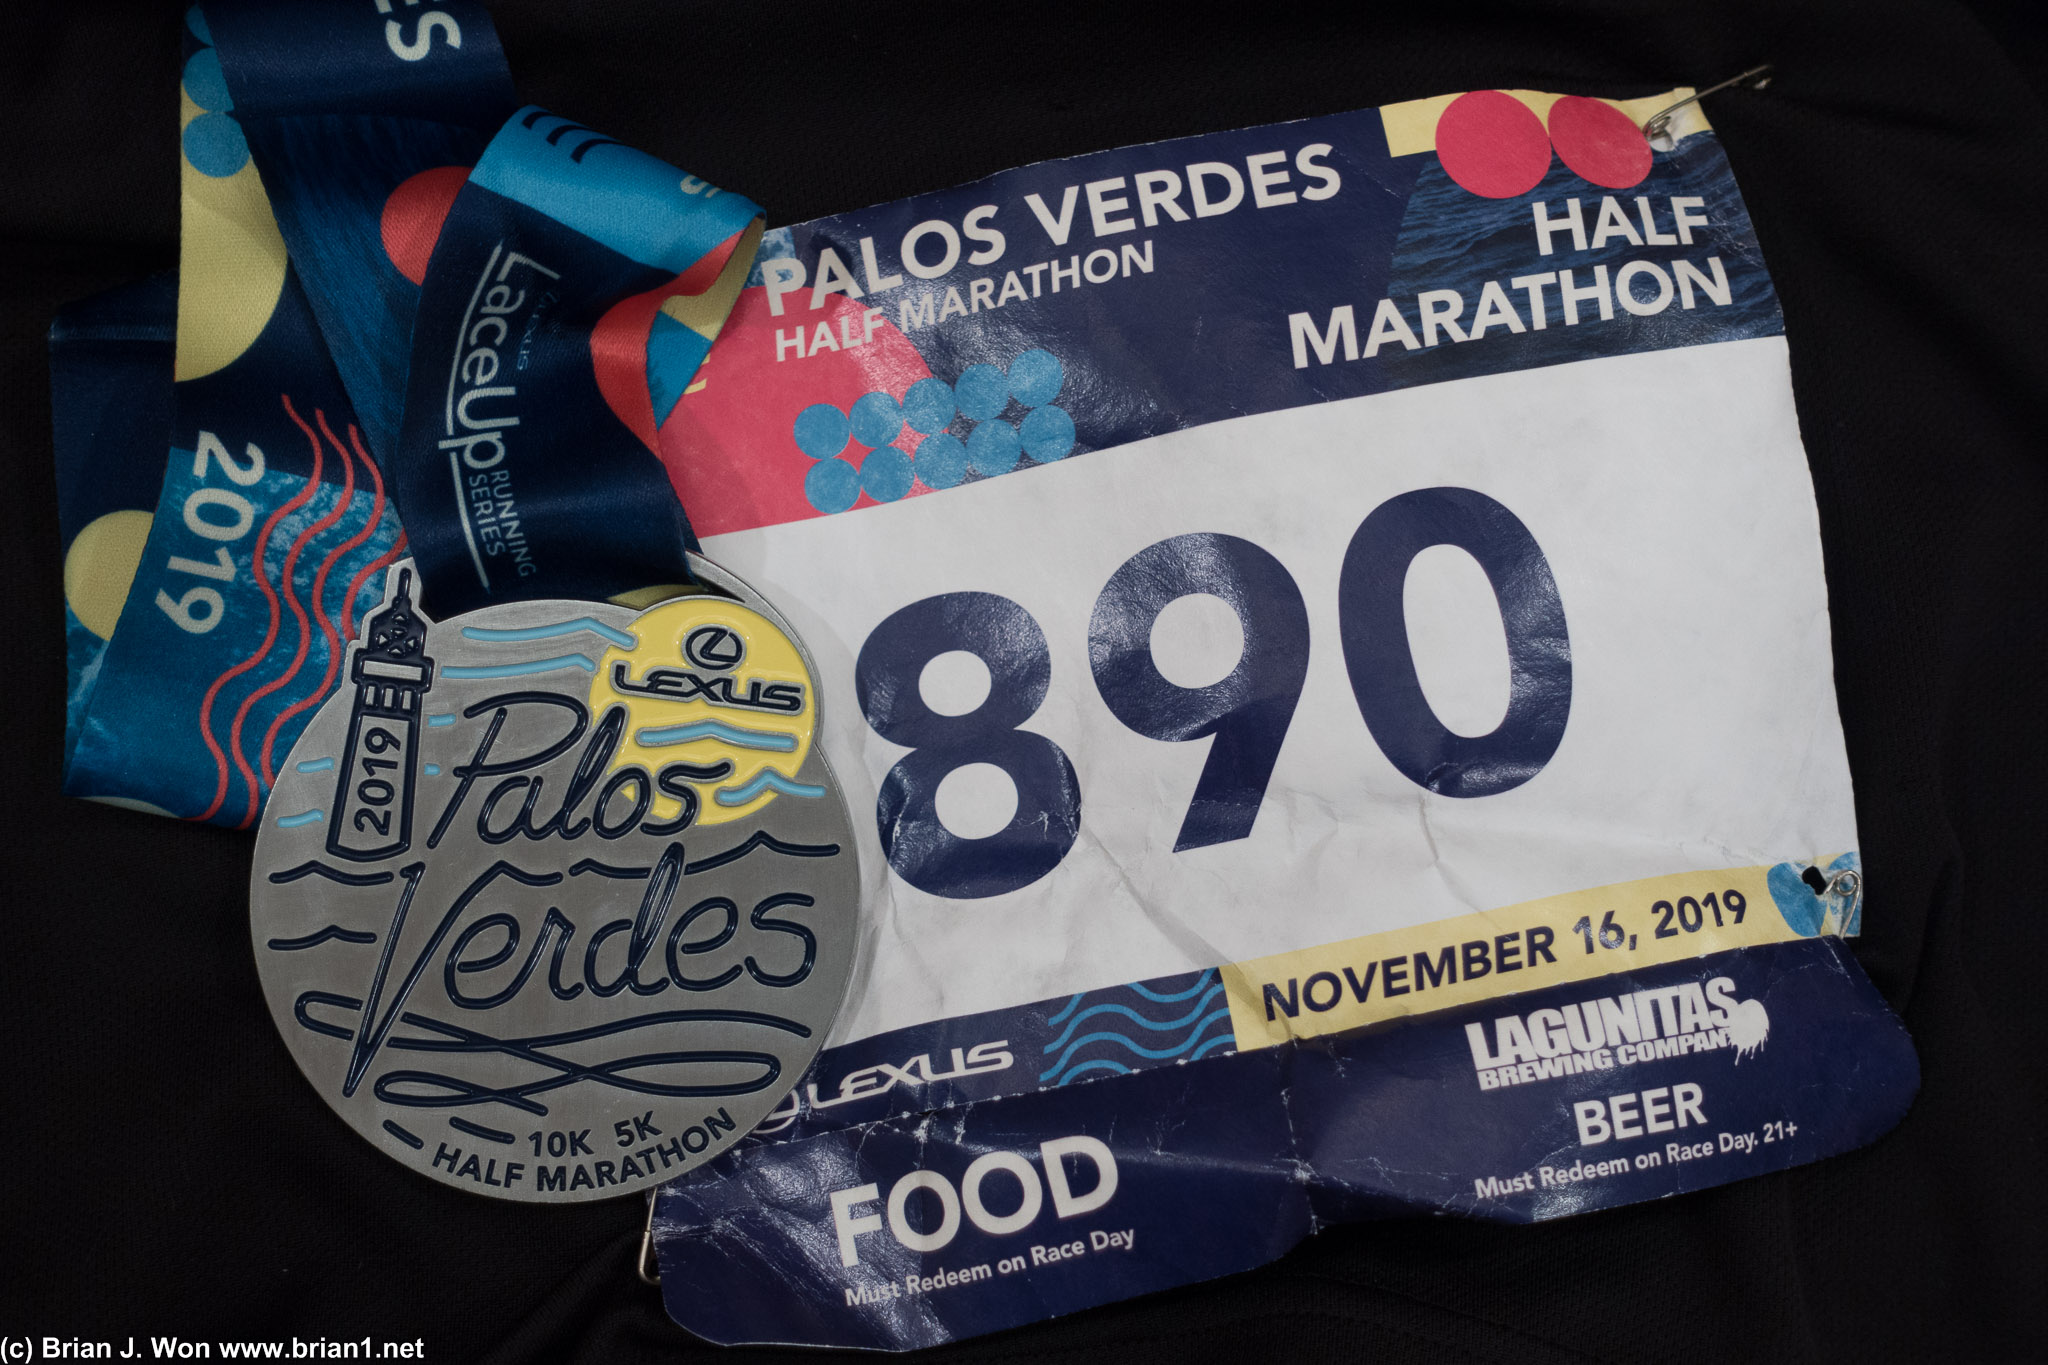 Palos Verdes Half Marathon success, 1:54:43. Those hills were a workout.